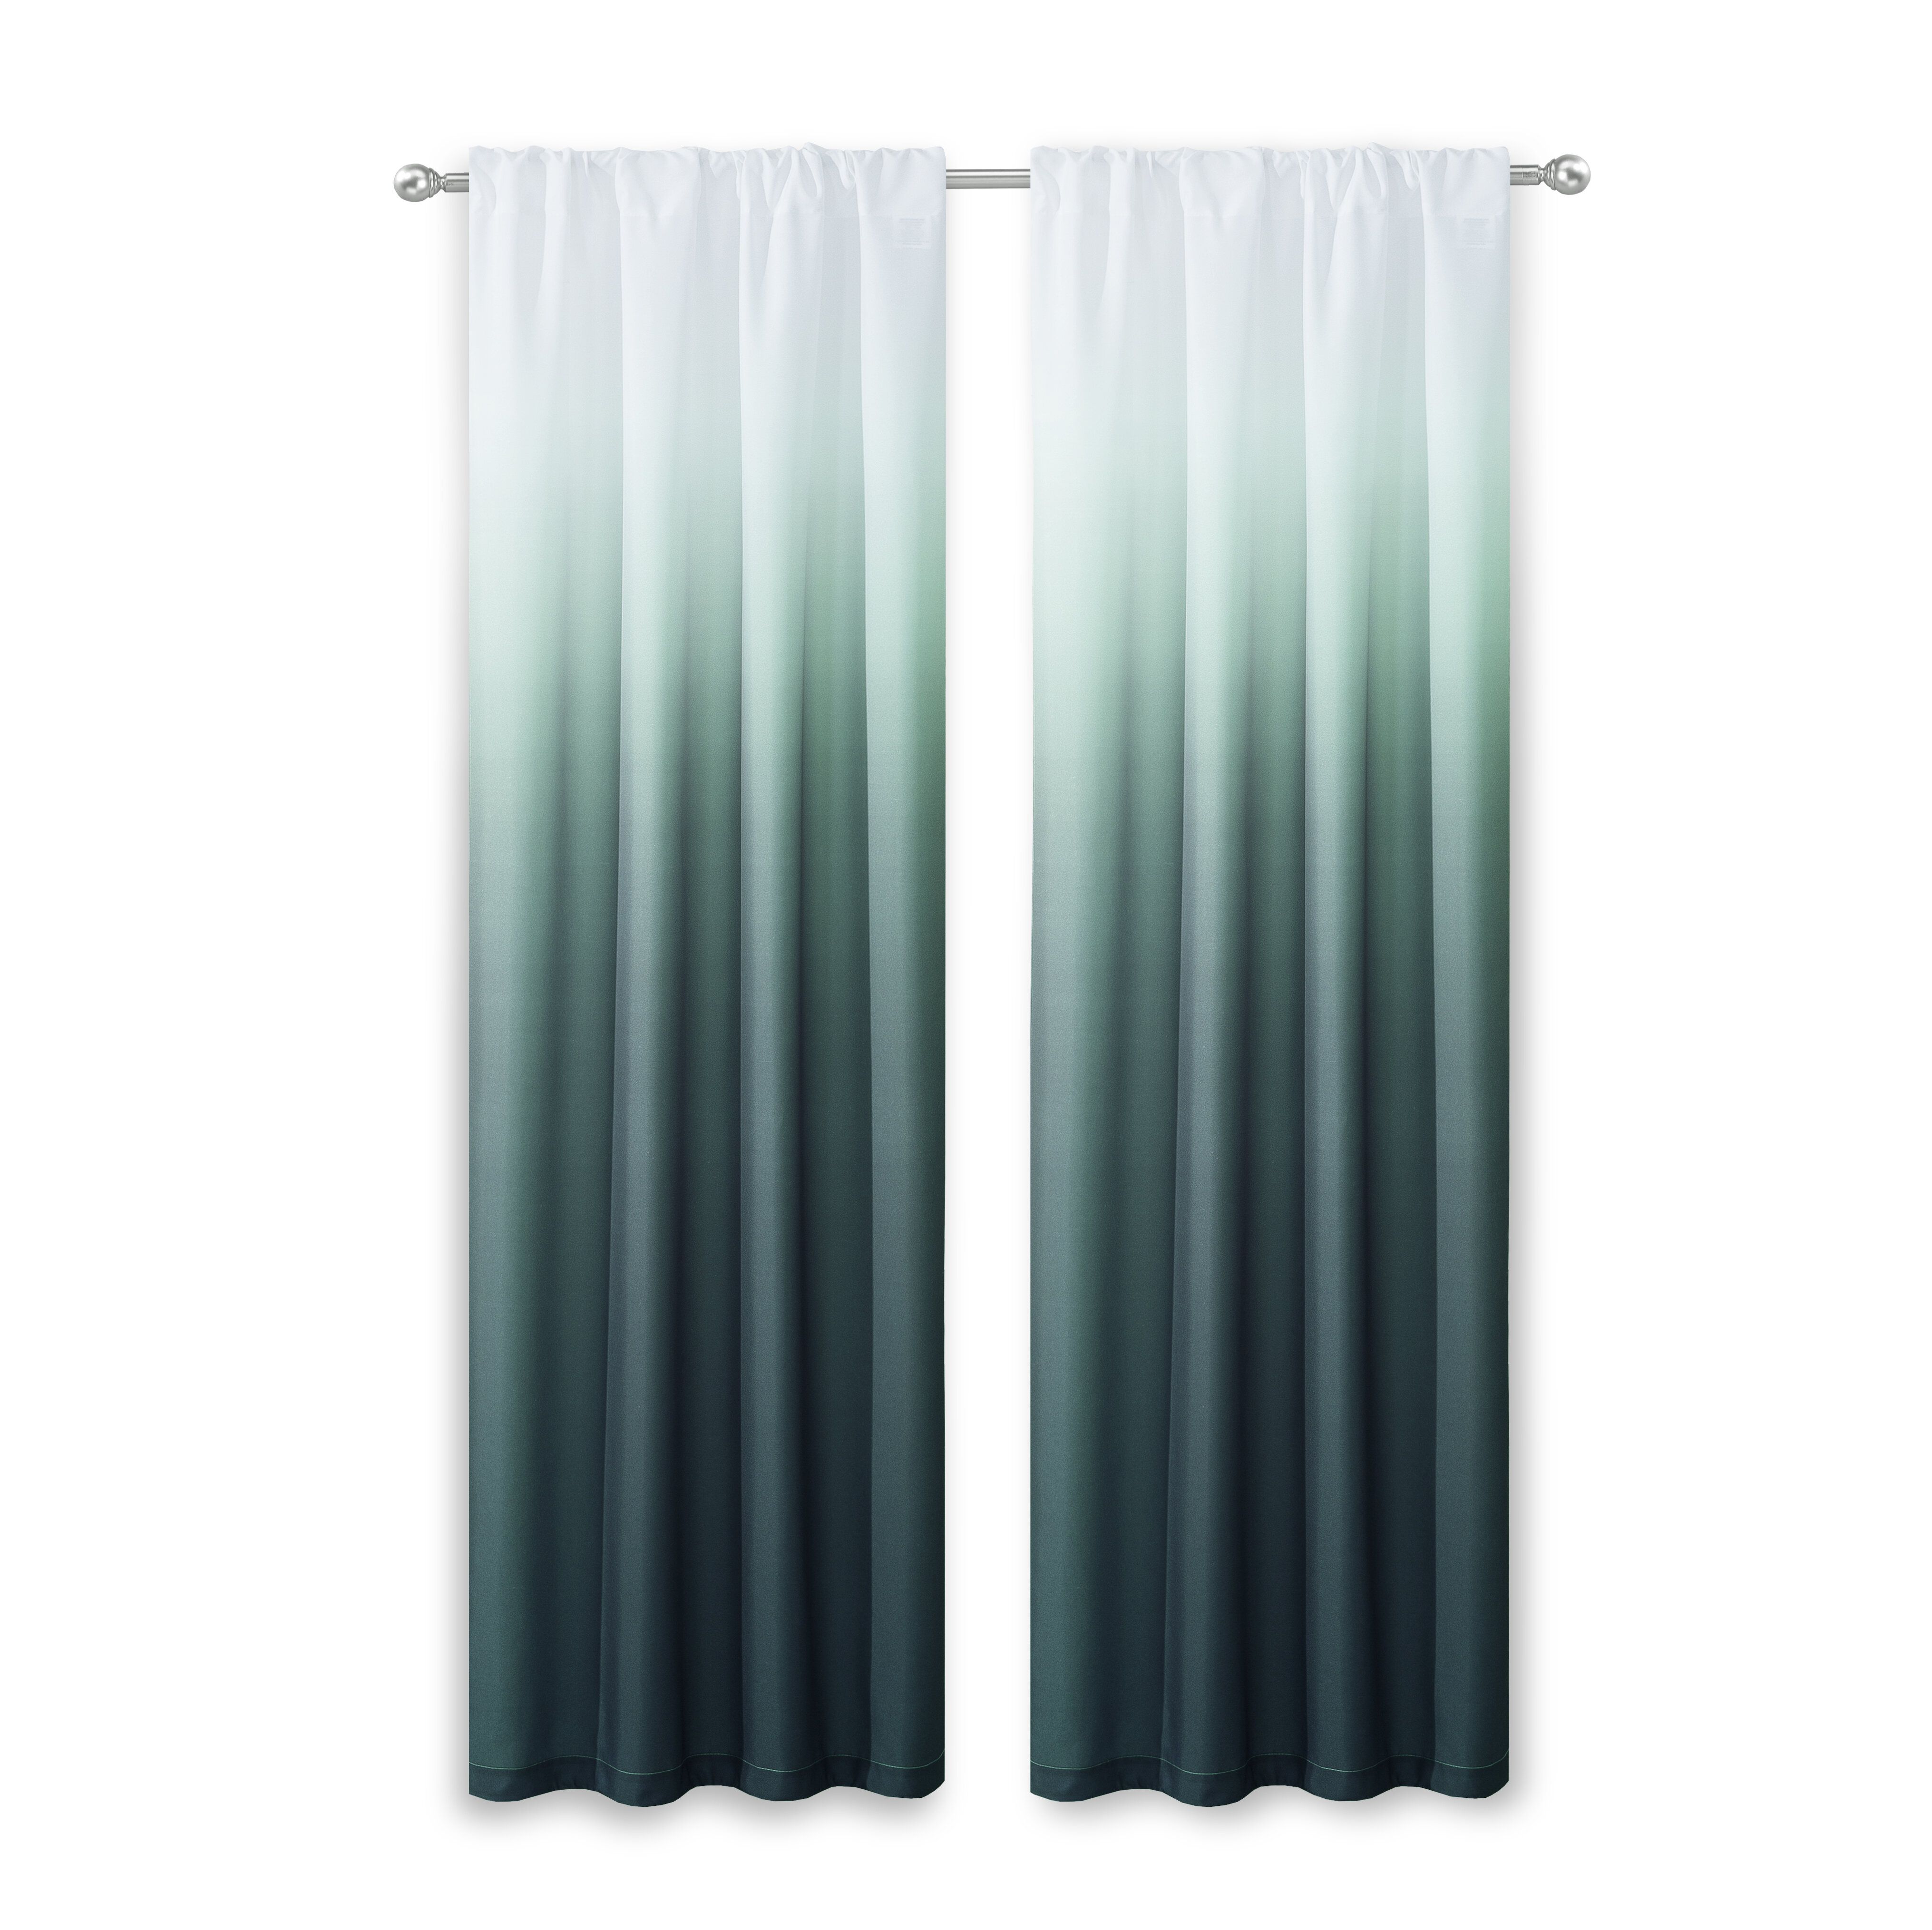 Nuss Ombre Room Darkening Rod Pocket Curtain Panels With Rod Pocket Curtain Panels (View 15 of 20)